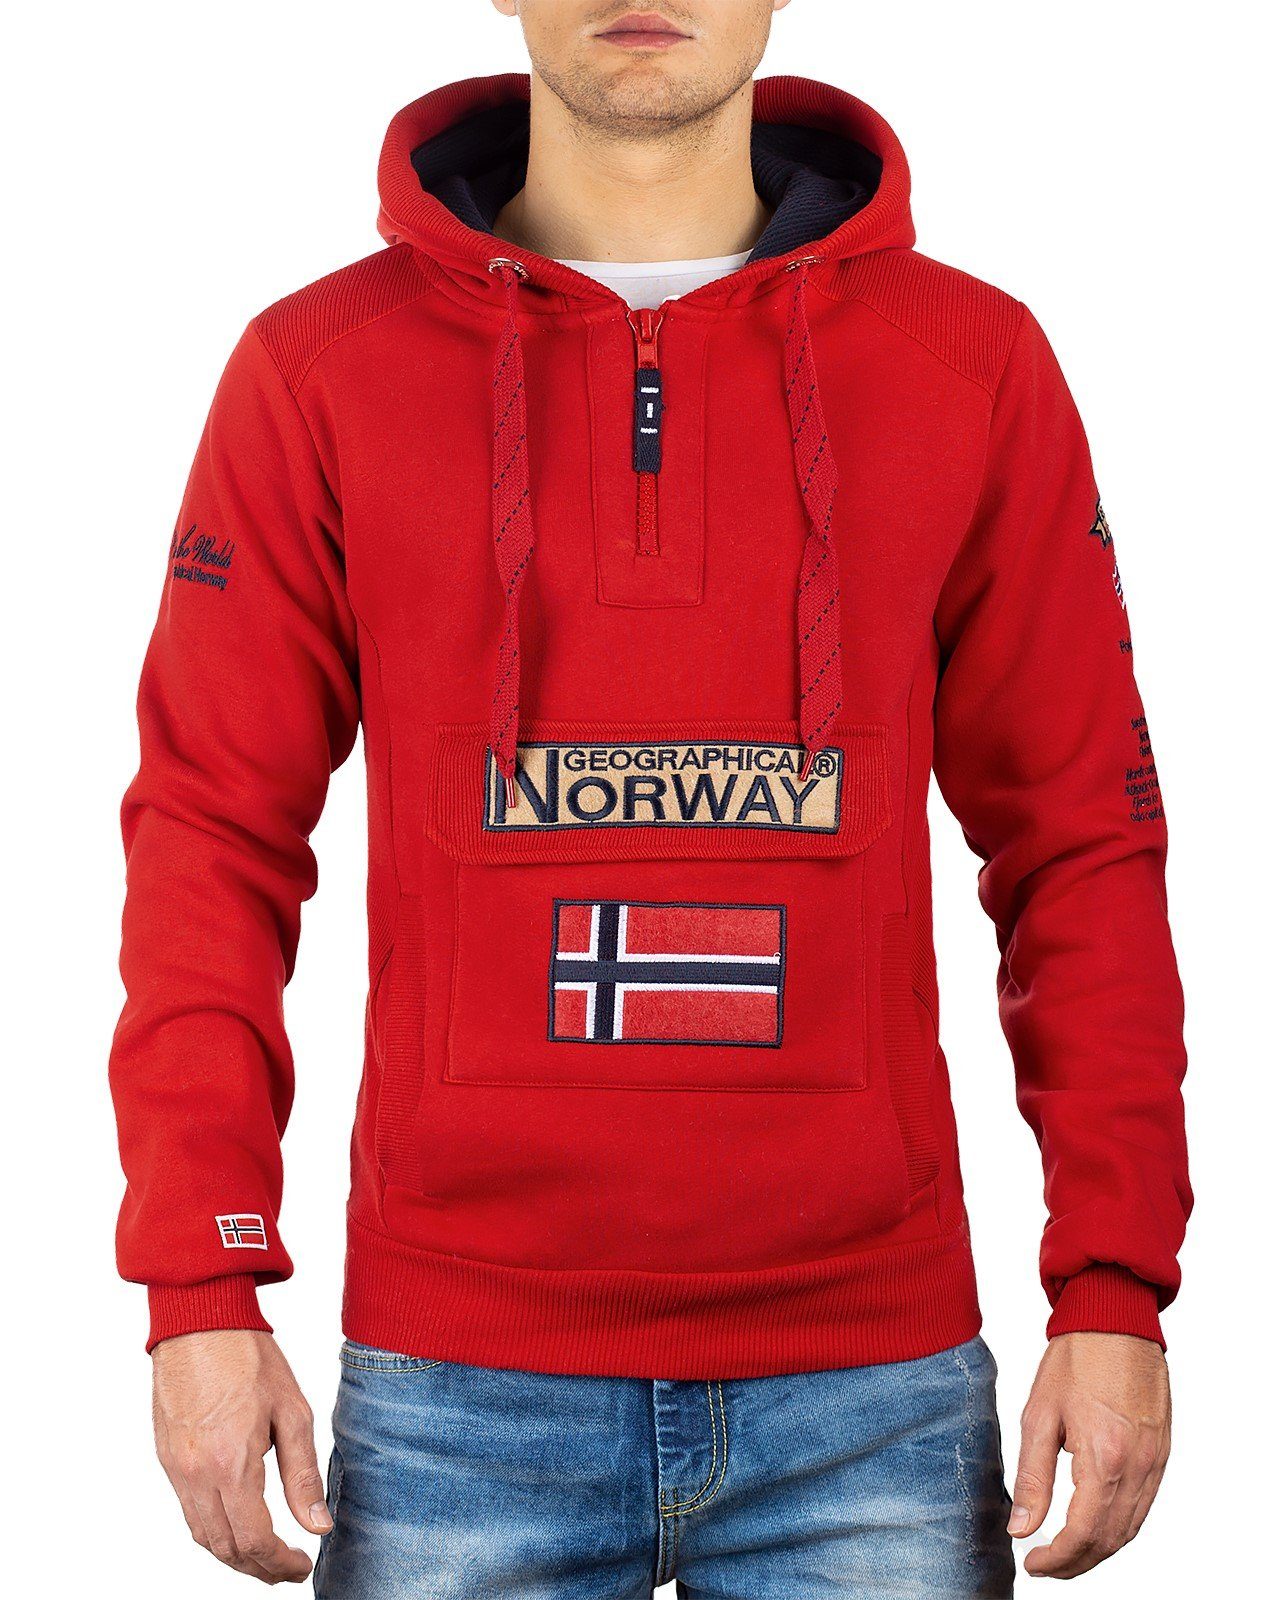 Geographical Norway Herren Kapuzen Hoodie Pullover Norwegen Fahne